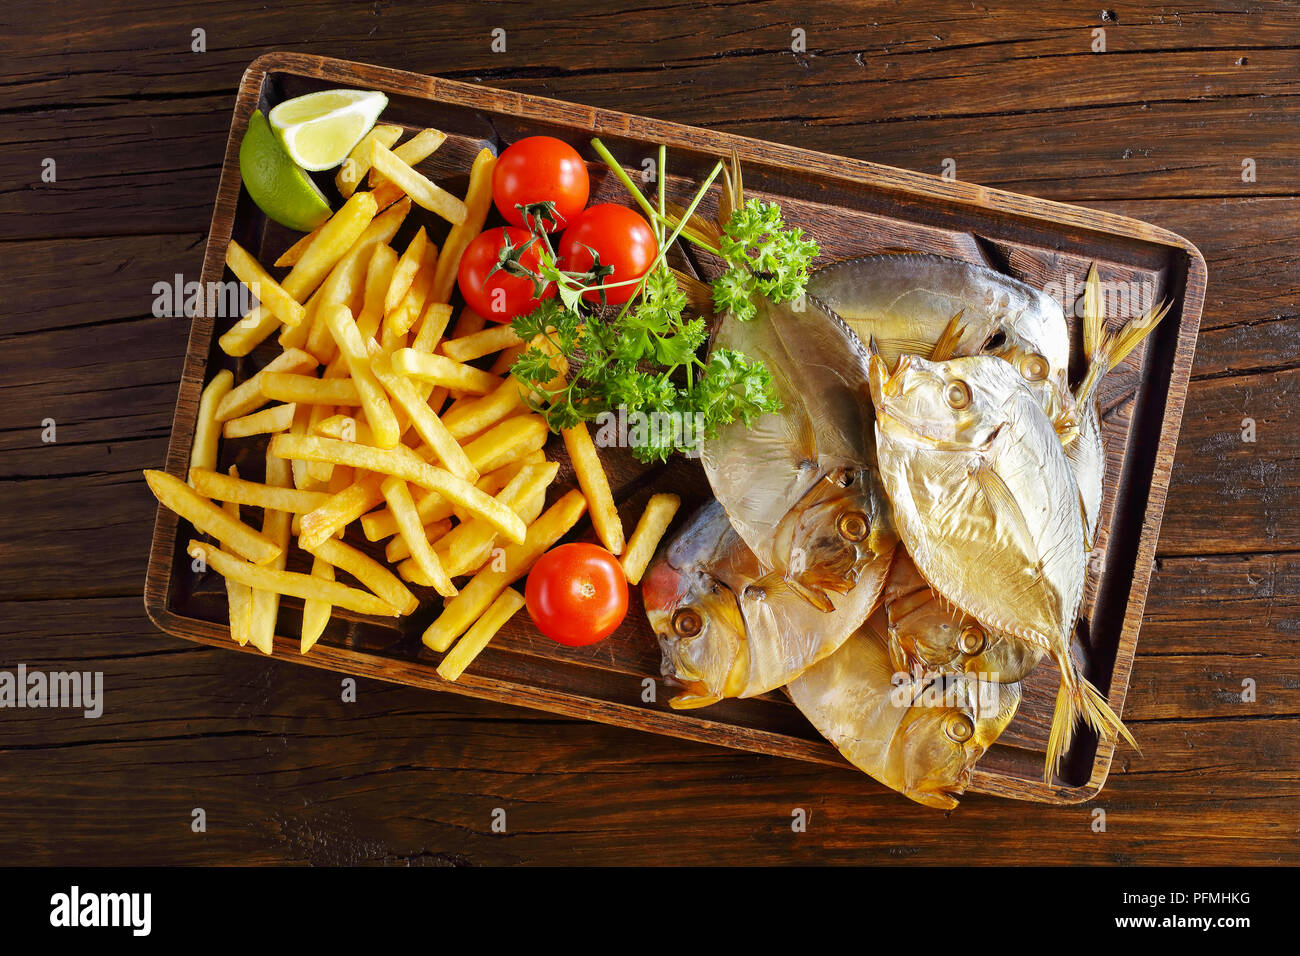 Köstlich kalt geräuchert Mondfische und Chips auf braun Schneidbrett serviert auf rustikalen Holztisch, Ansicht von oben Stockfoto